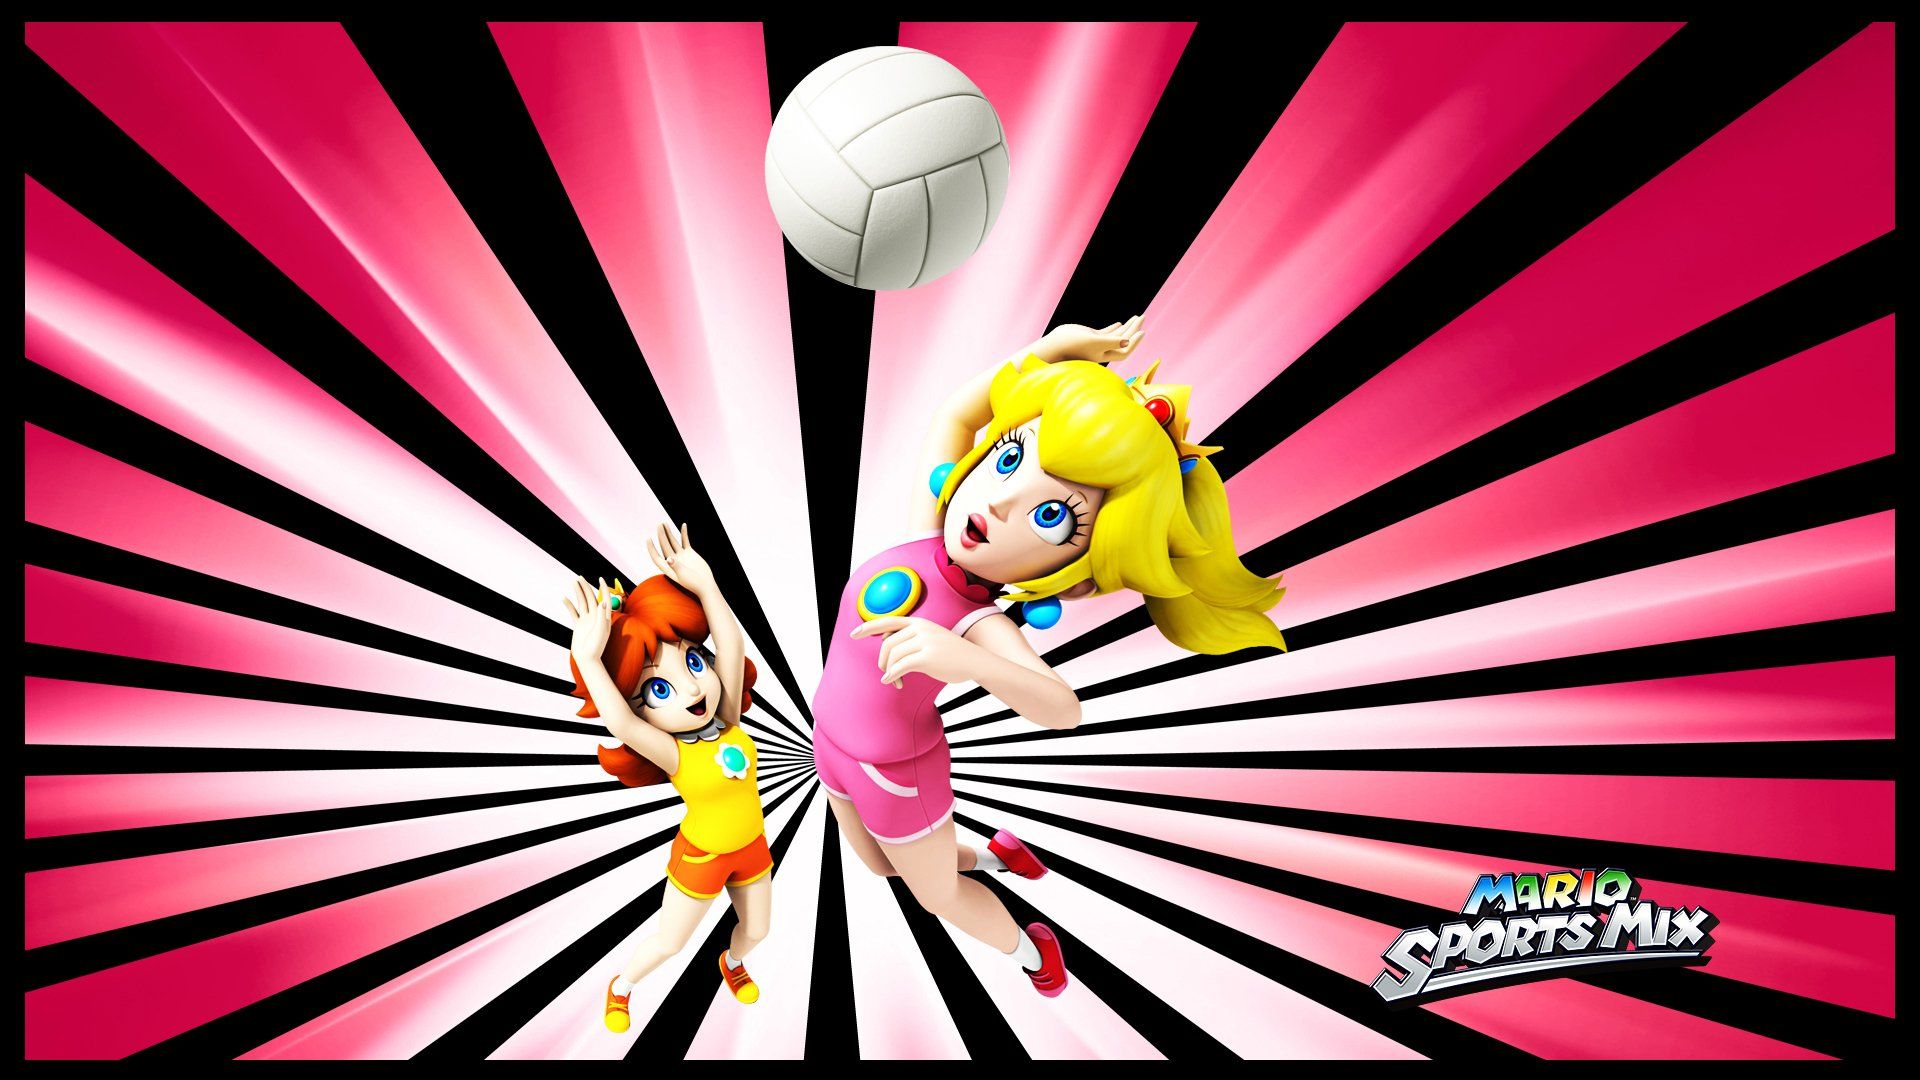 Mario Sports Mix HD Wallpaper